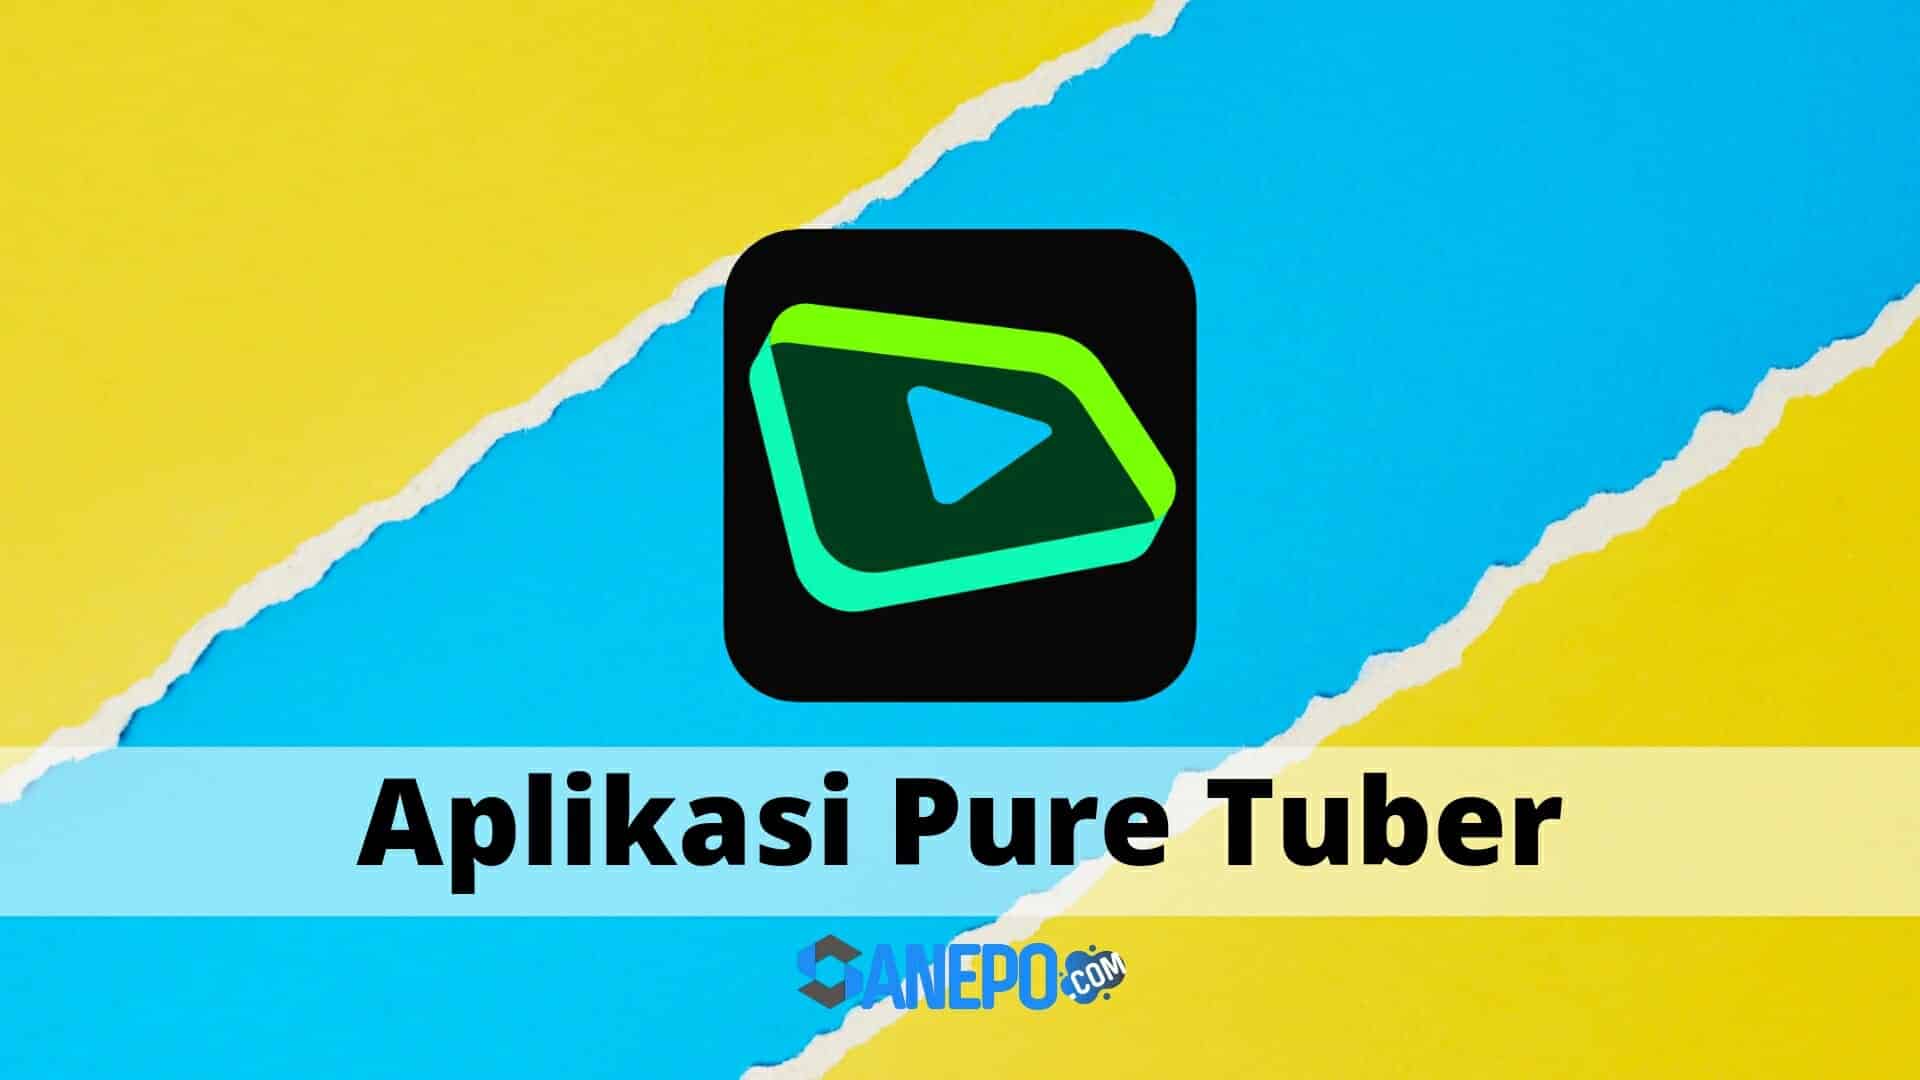 Pure Tuber Mod APK versi terbaru 2022